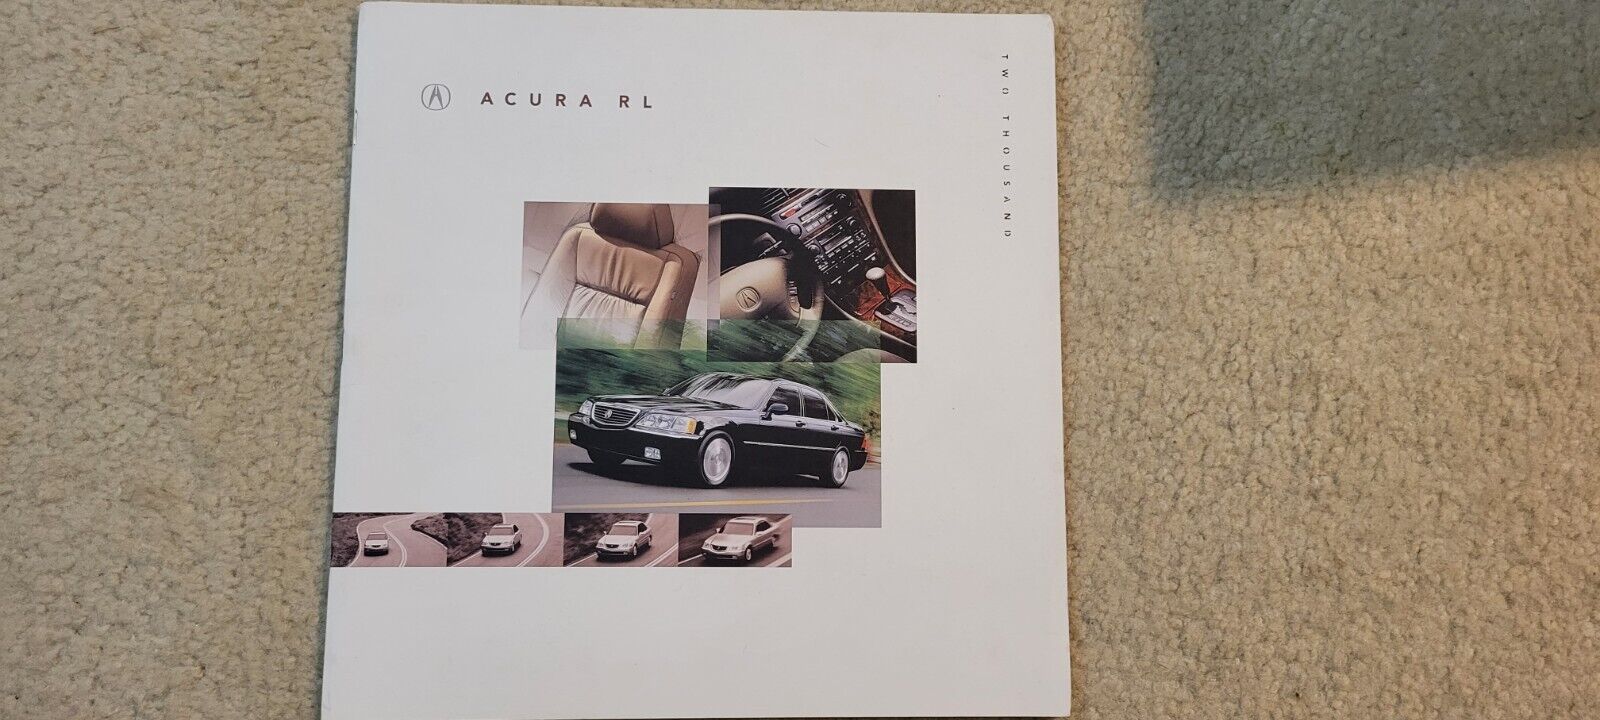 2000 Acura RL  Large Sales Brochure